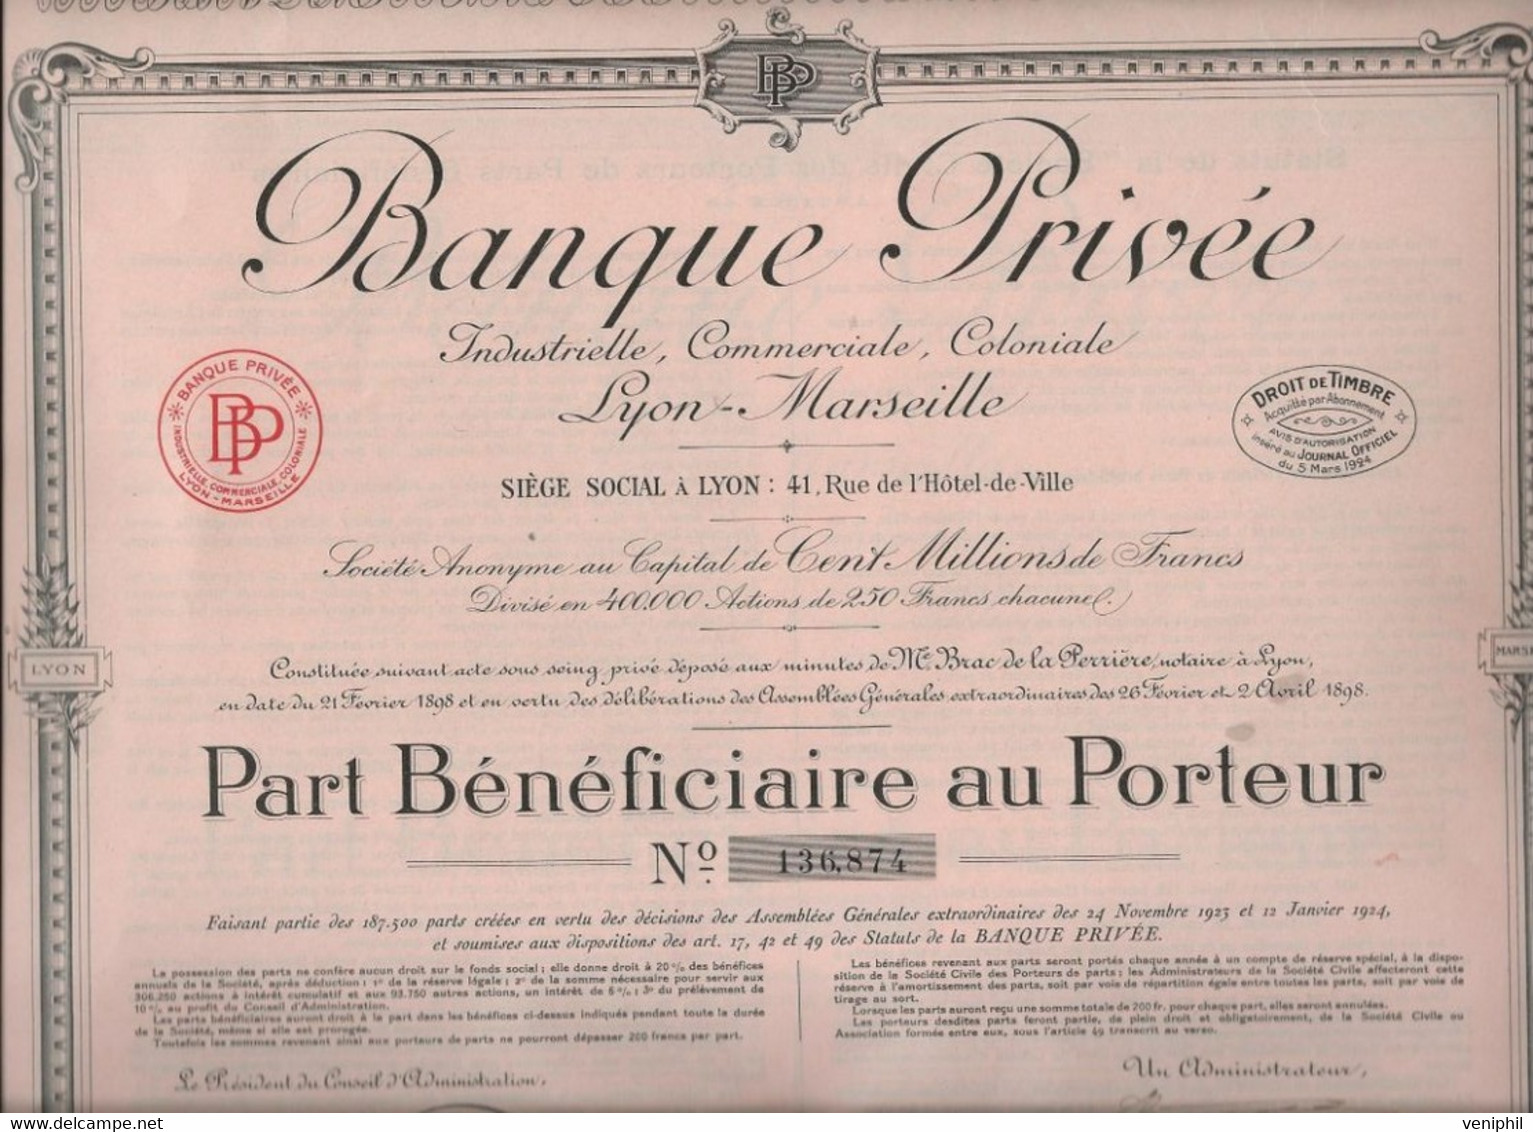 BANQUE PRIVEE INDUSTRIELLE-COMMERCIAL-COLONIALE- LYON-MARSEILLE - LOT DE 4 ACTIONS DE 250 FRS -ANNEE 1924 - Banque & Assurance